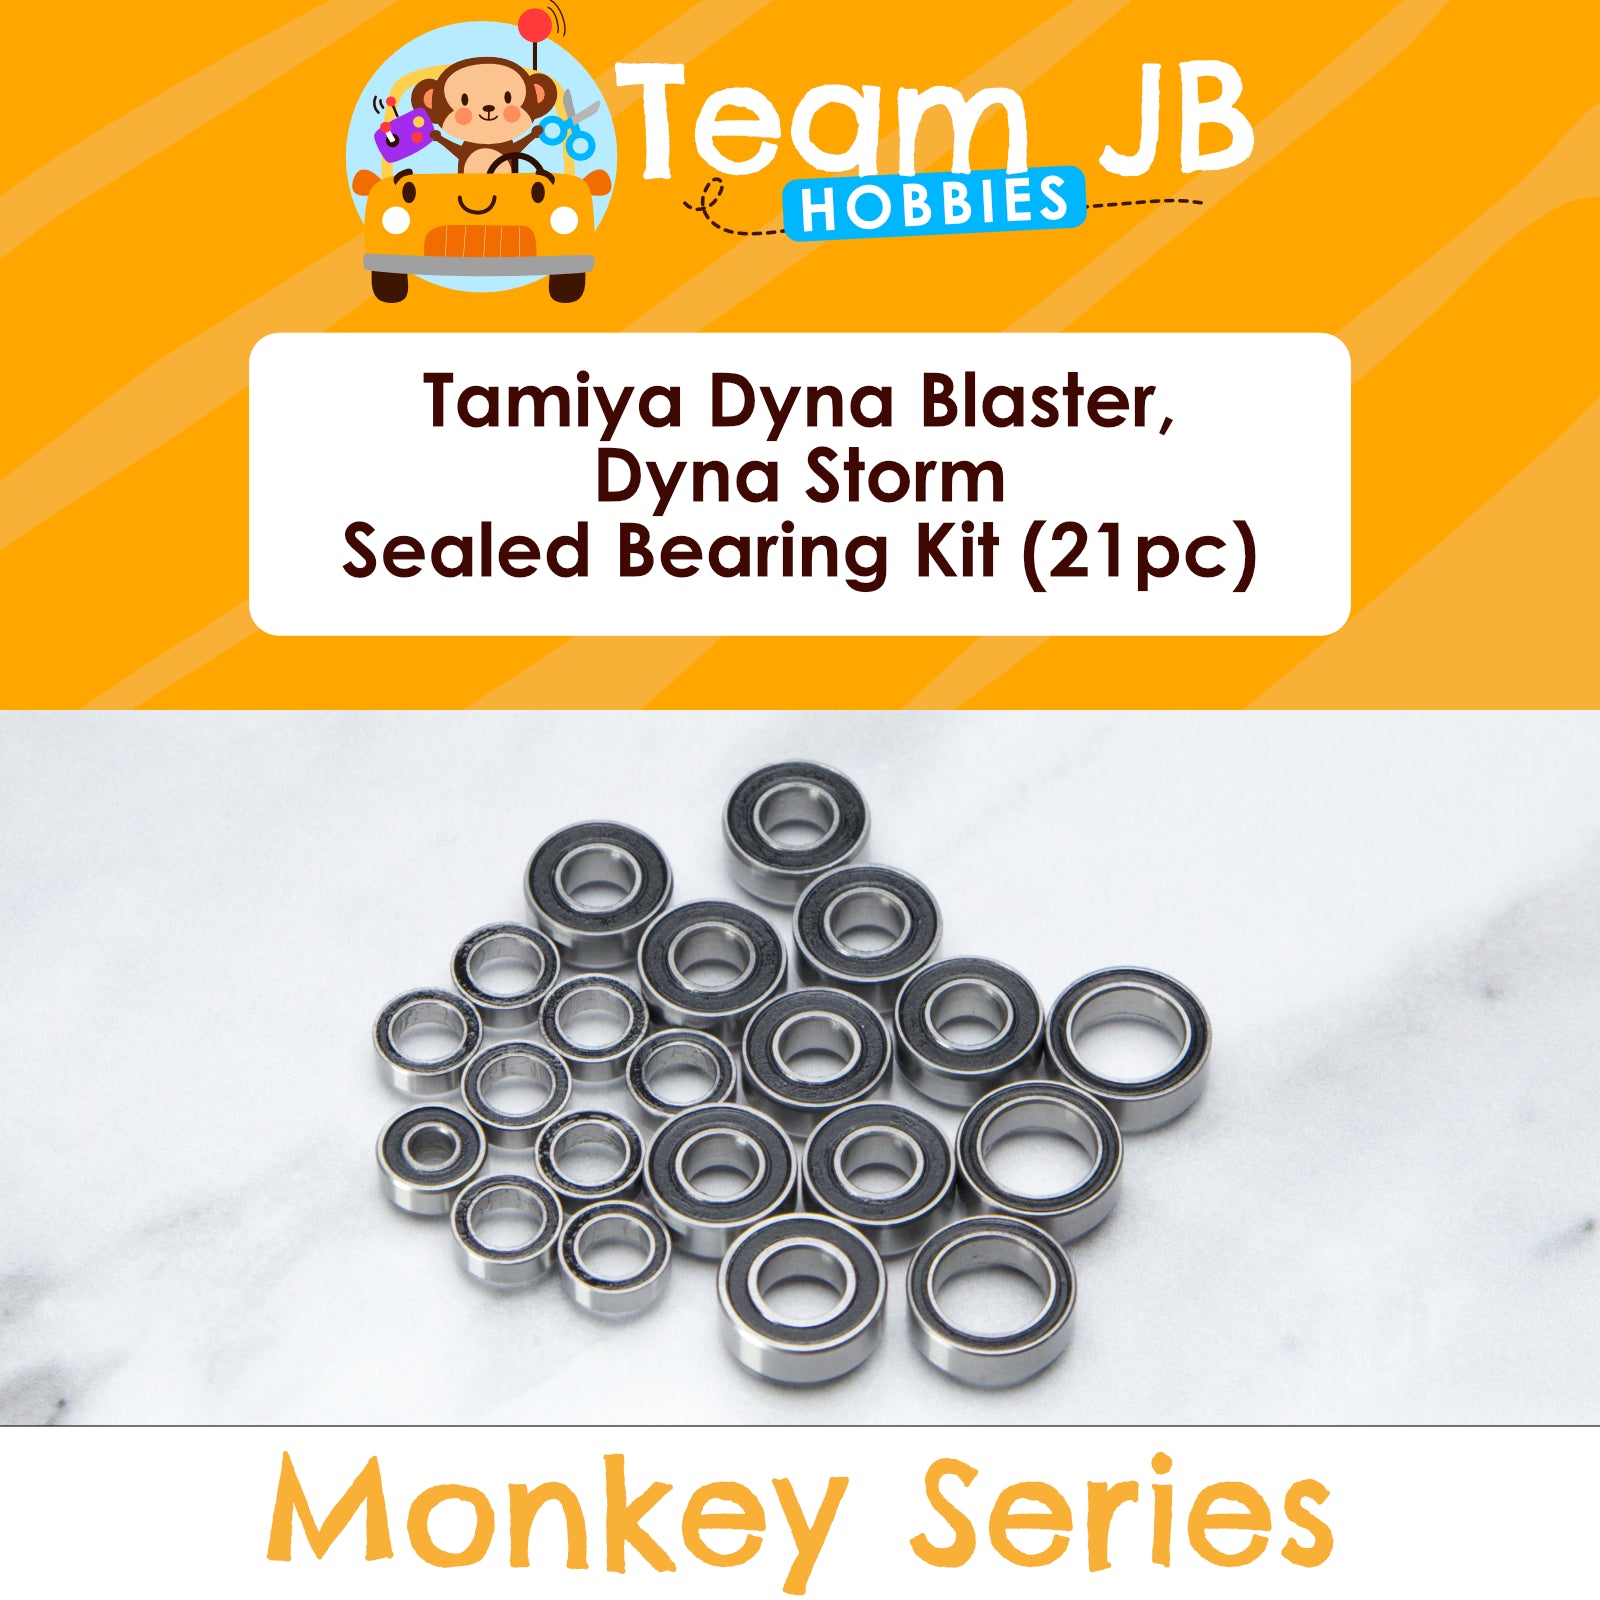 Tamiya Dyna Blaster, Dyna Storm - Sealed Bearing Kit